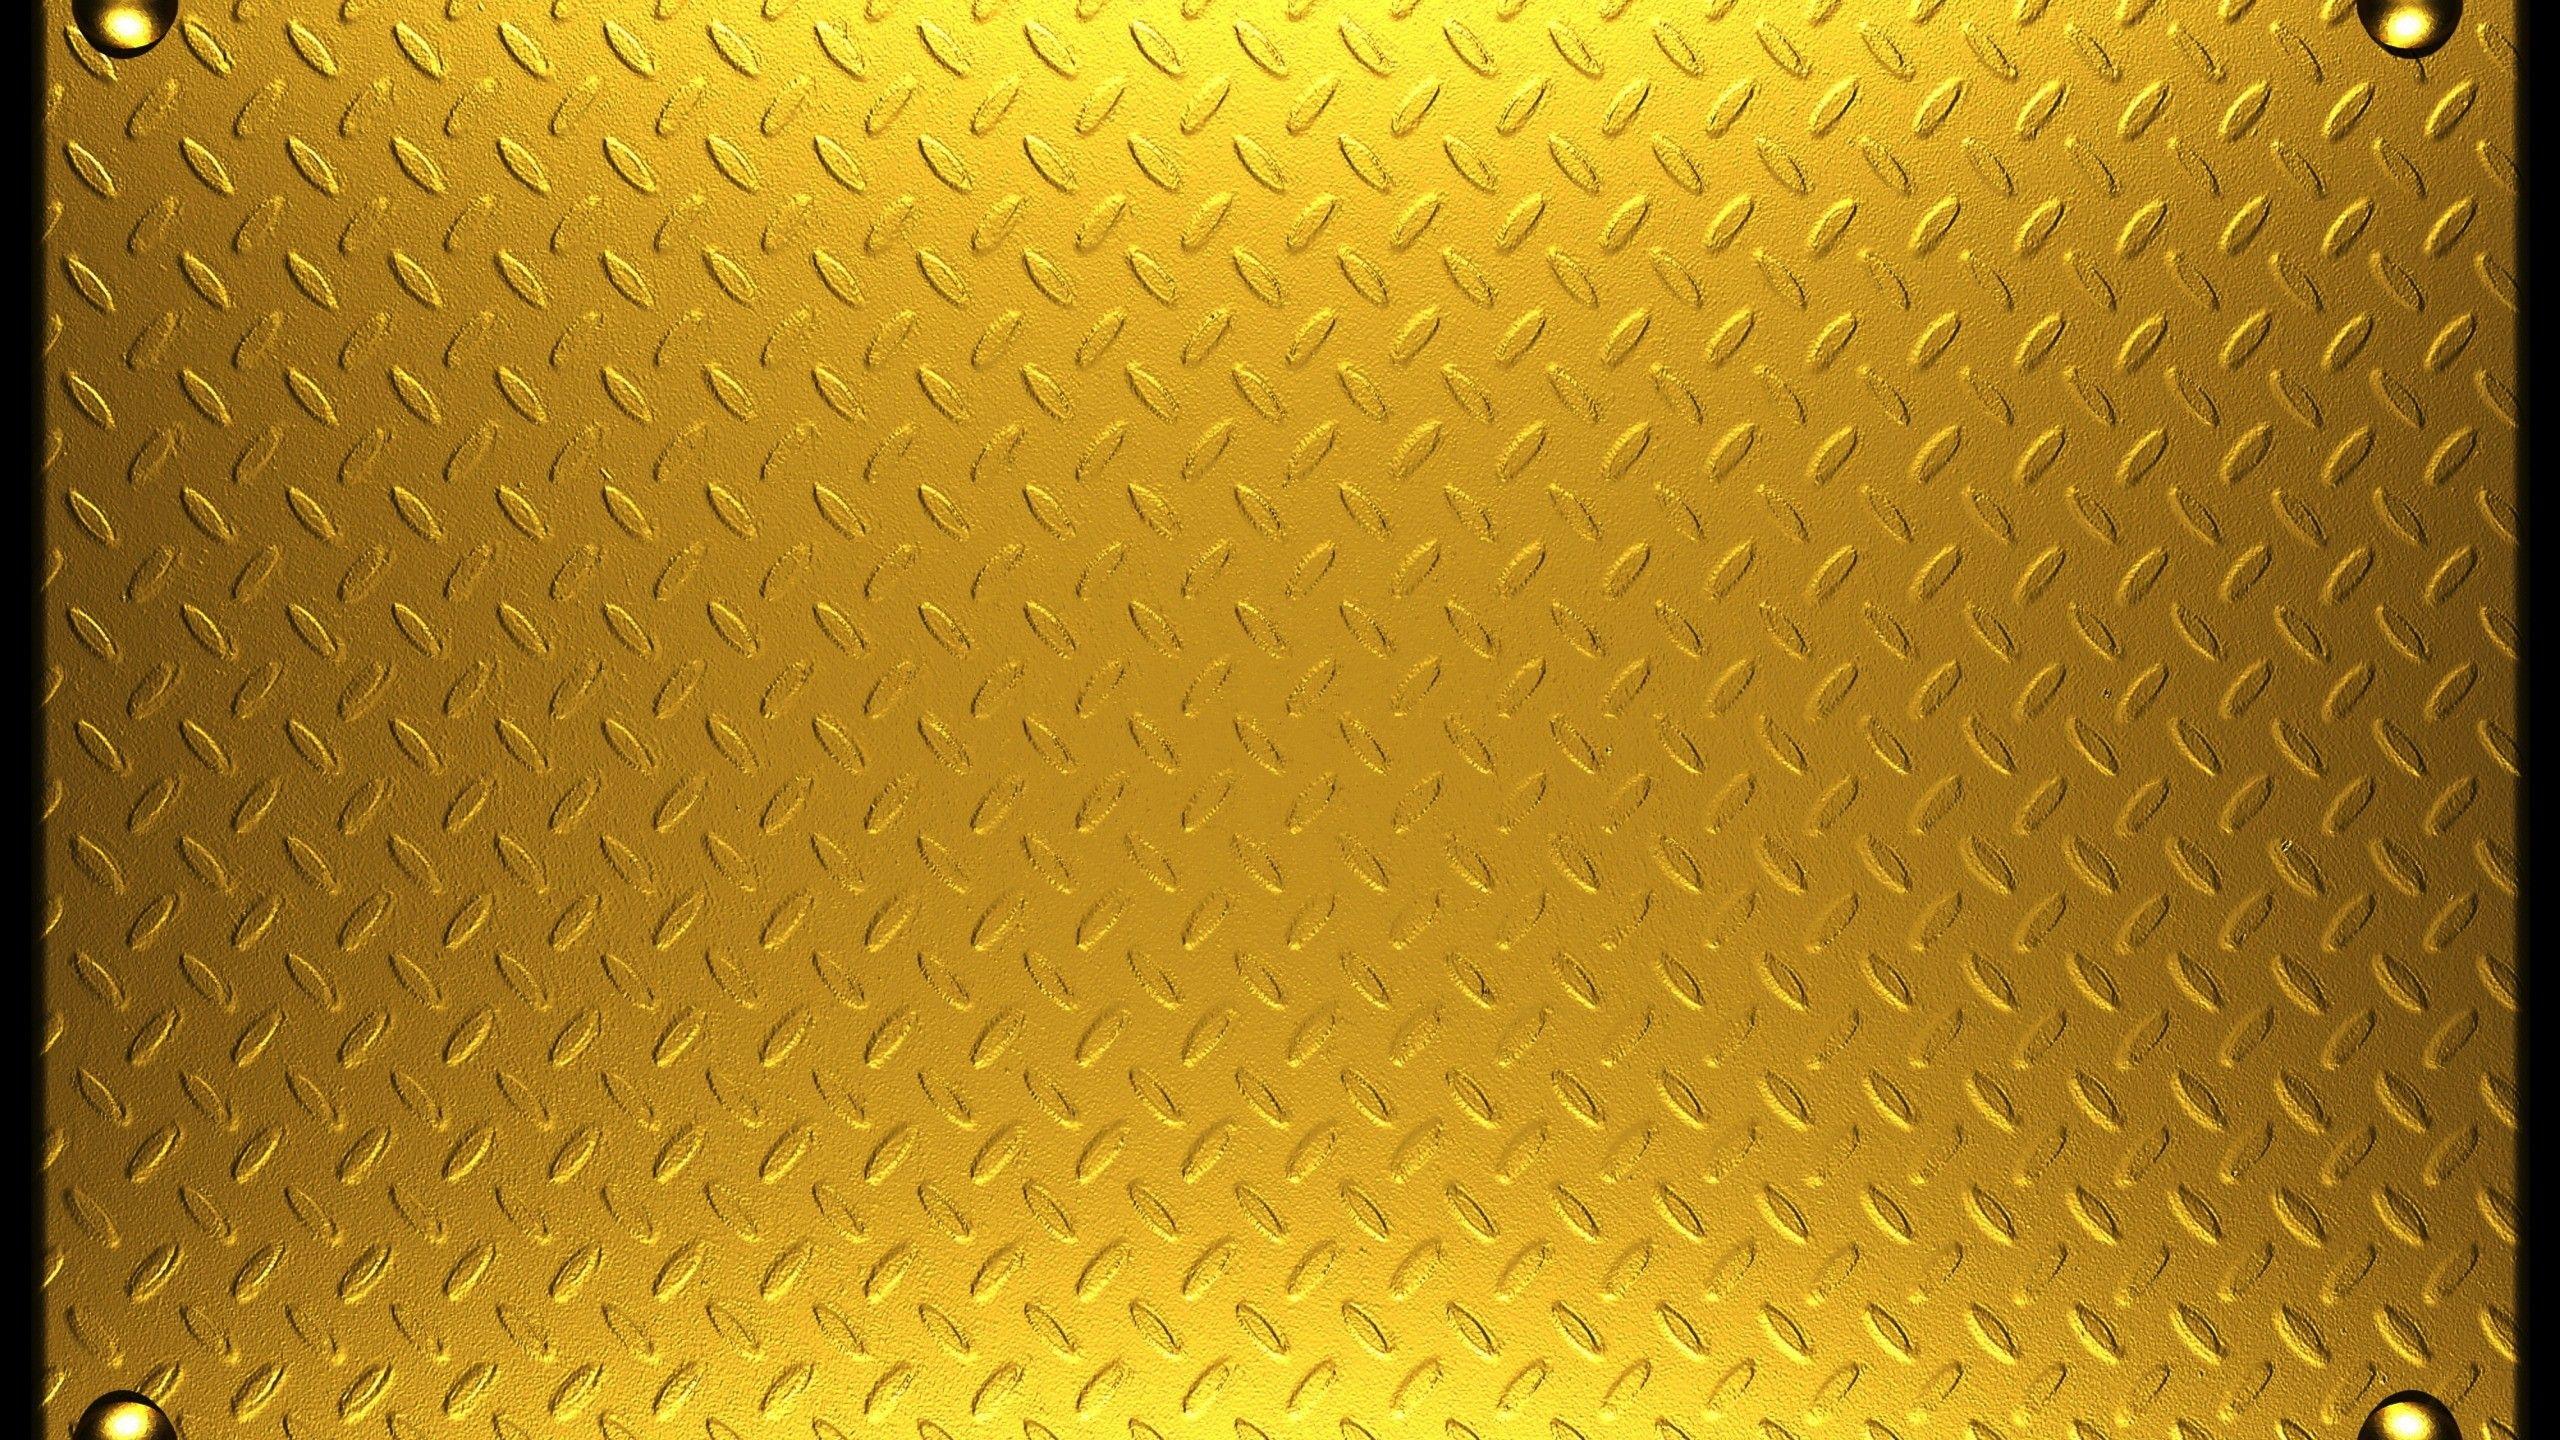 Golden Texture Wallpapers - Top Free Golden Texture Backgrounds ...